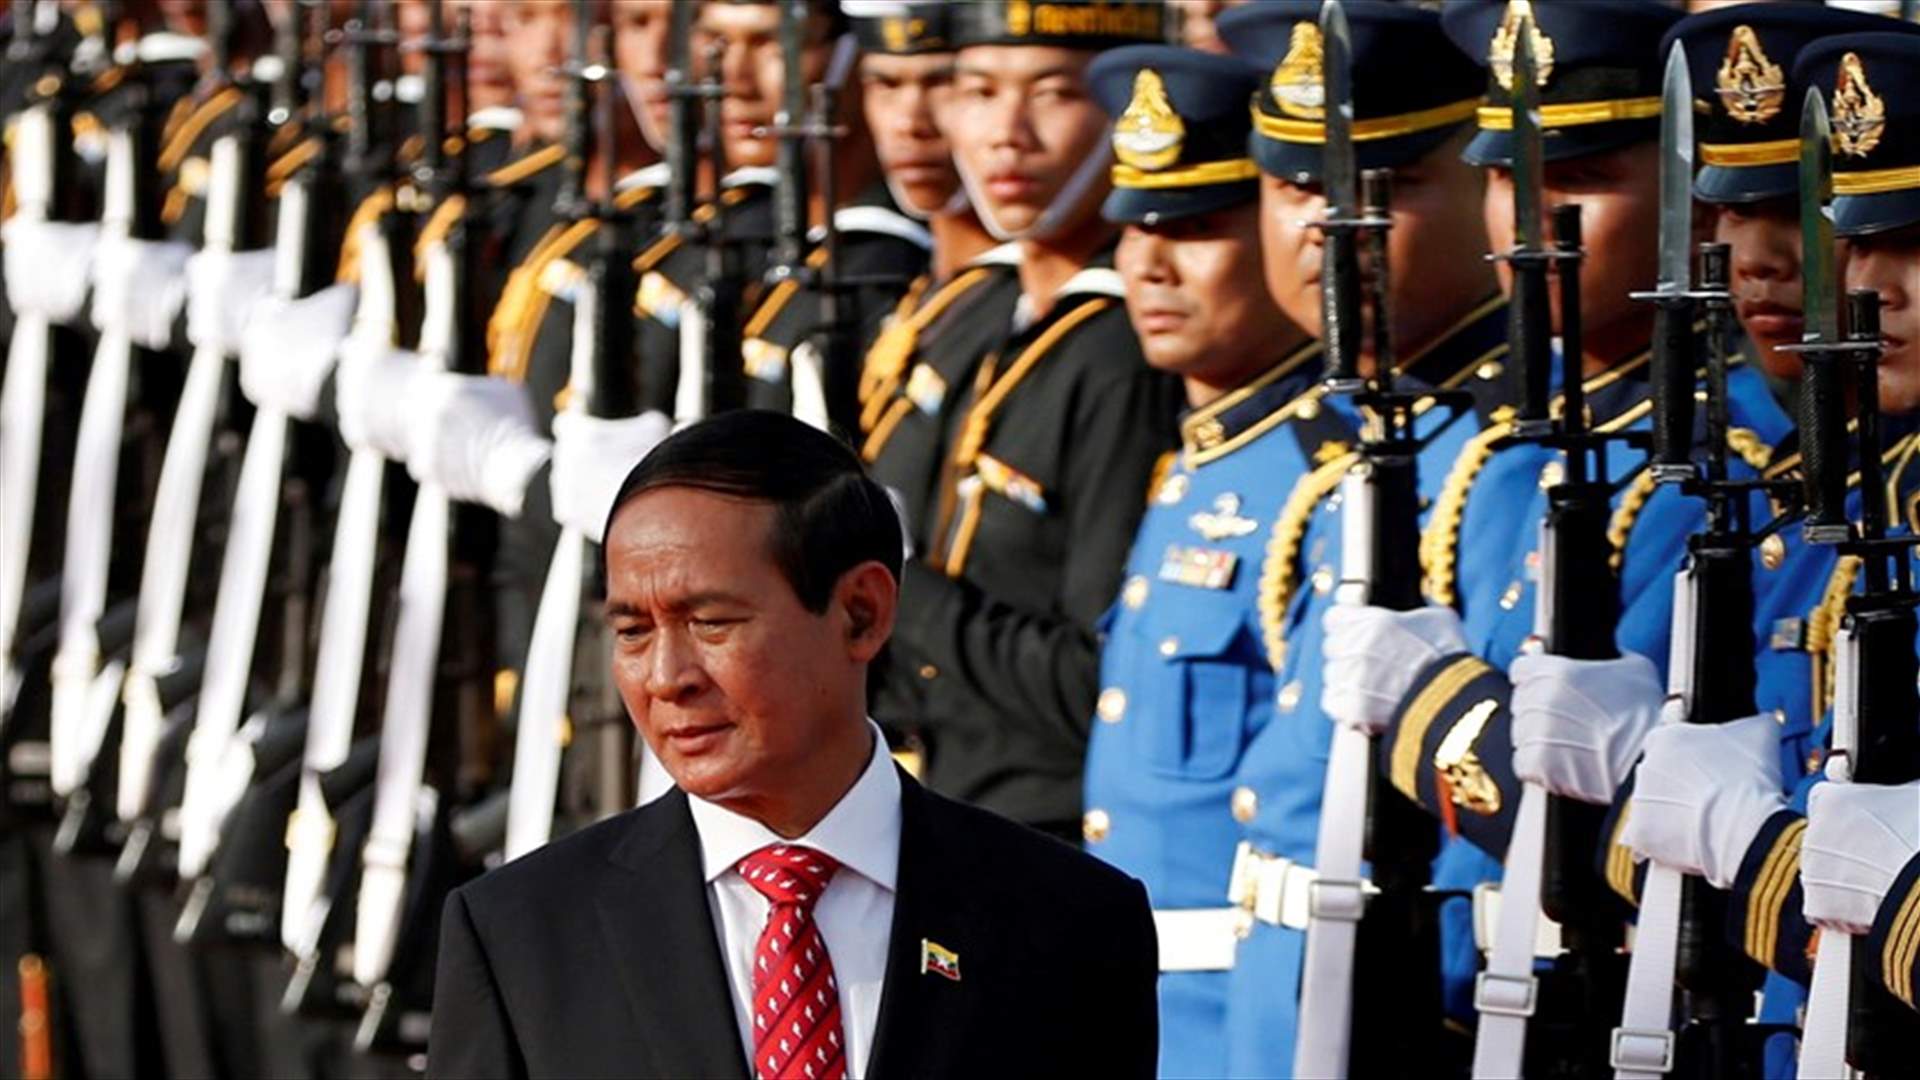 رئيس ميانمار المعزول يواجه تهمتين جديدتين